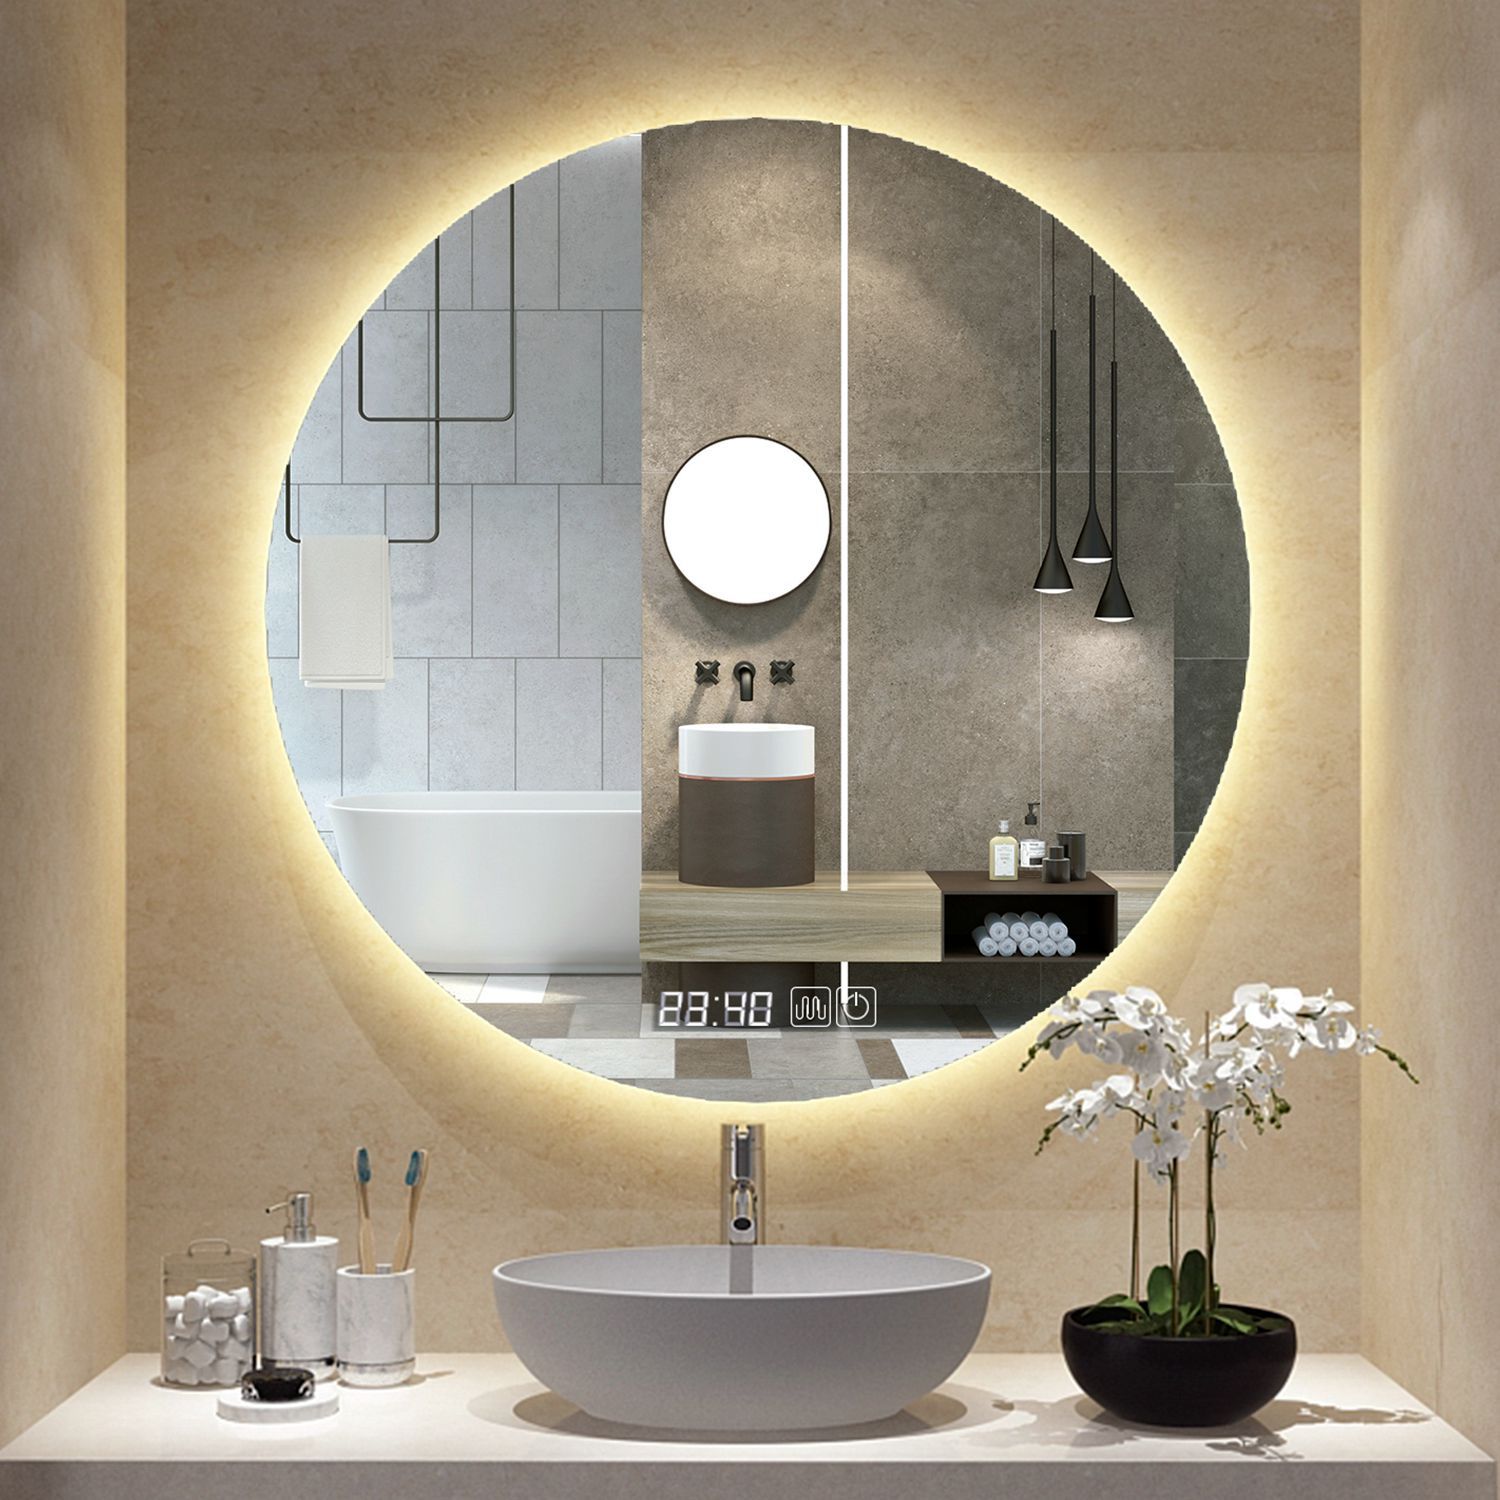 浴室智能圆镜带灯led触摸屏卫生间挂墙式发光感应镜壁挂防雾灯镜